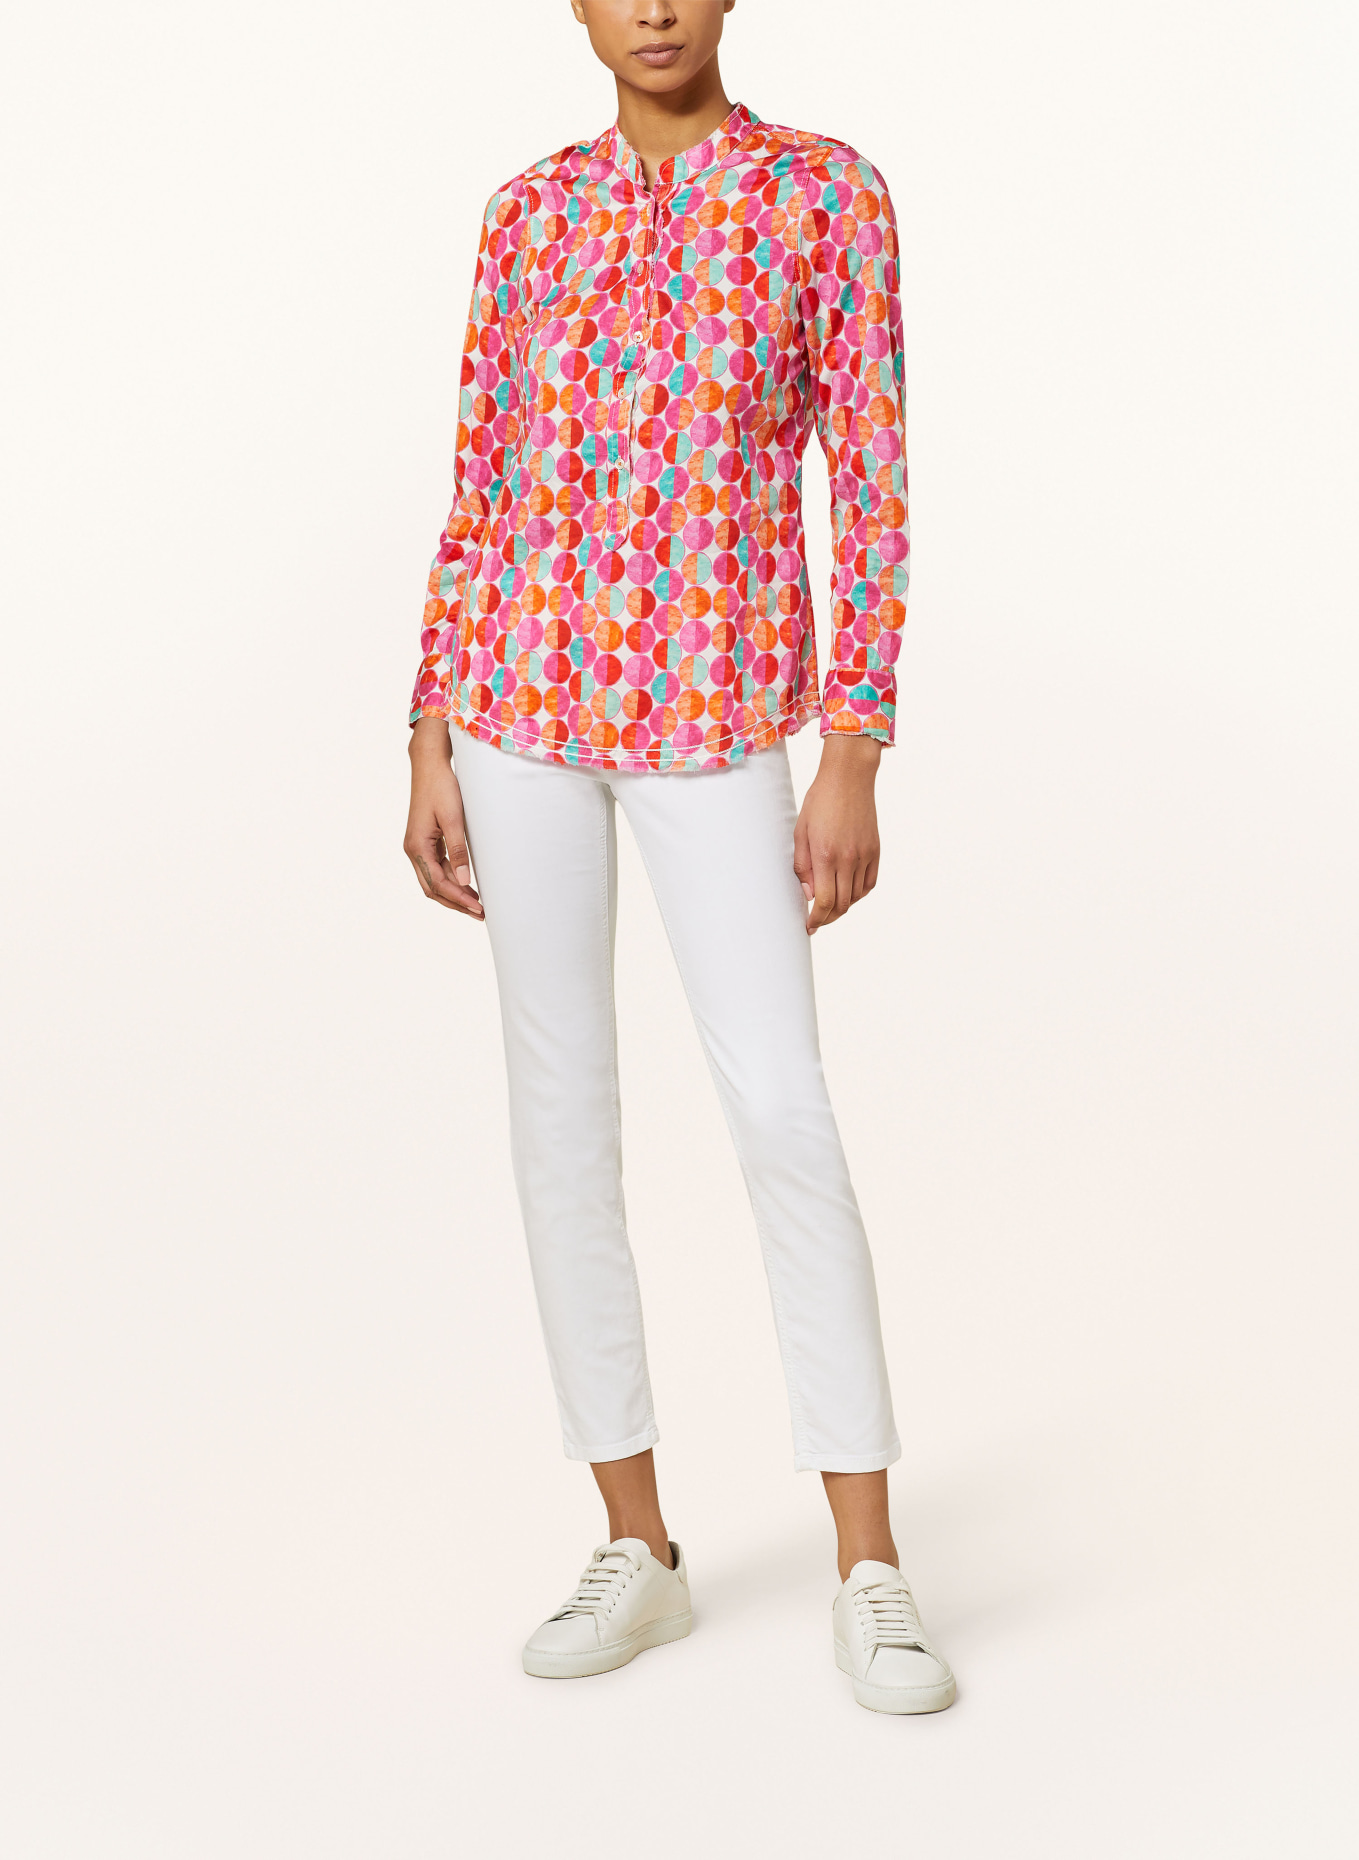 Emily VAN DEN BERGH Shirt blouse, Color: PINK/ ORANGE/ RED (Image 2)